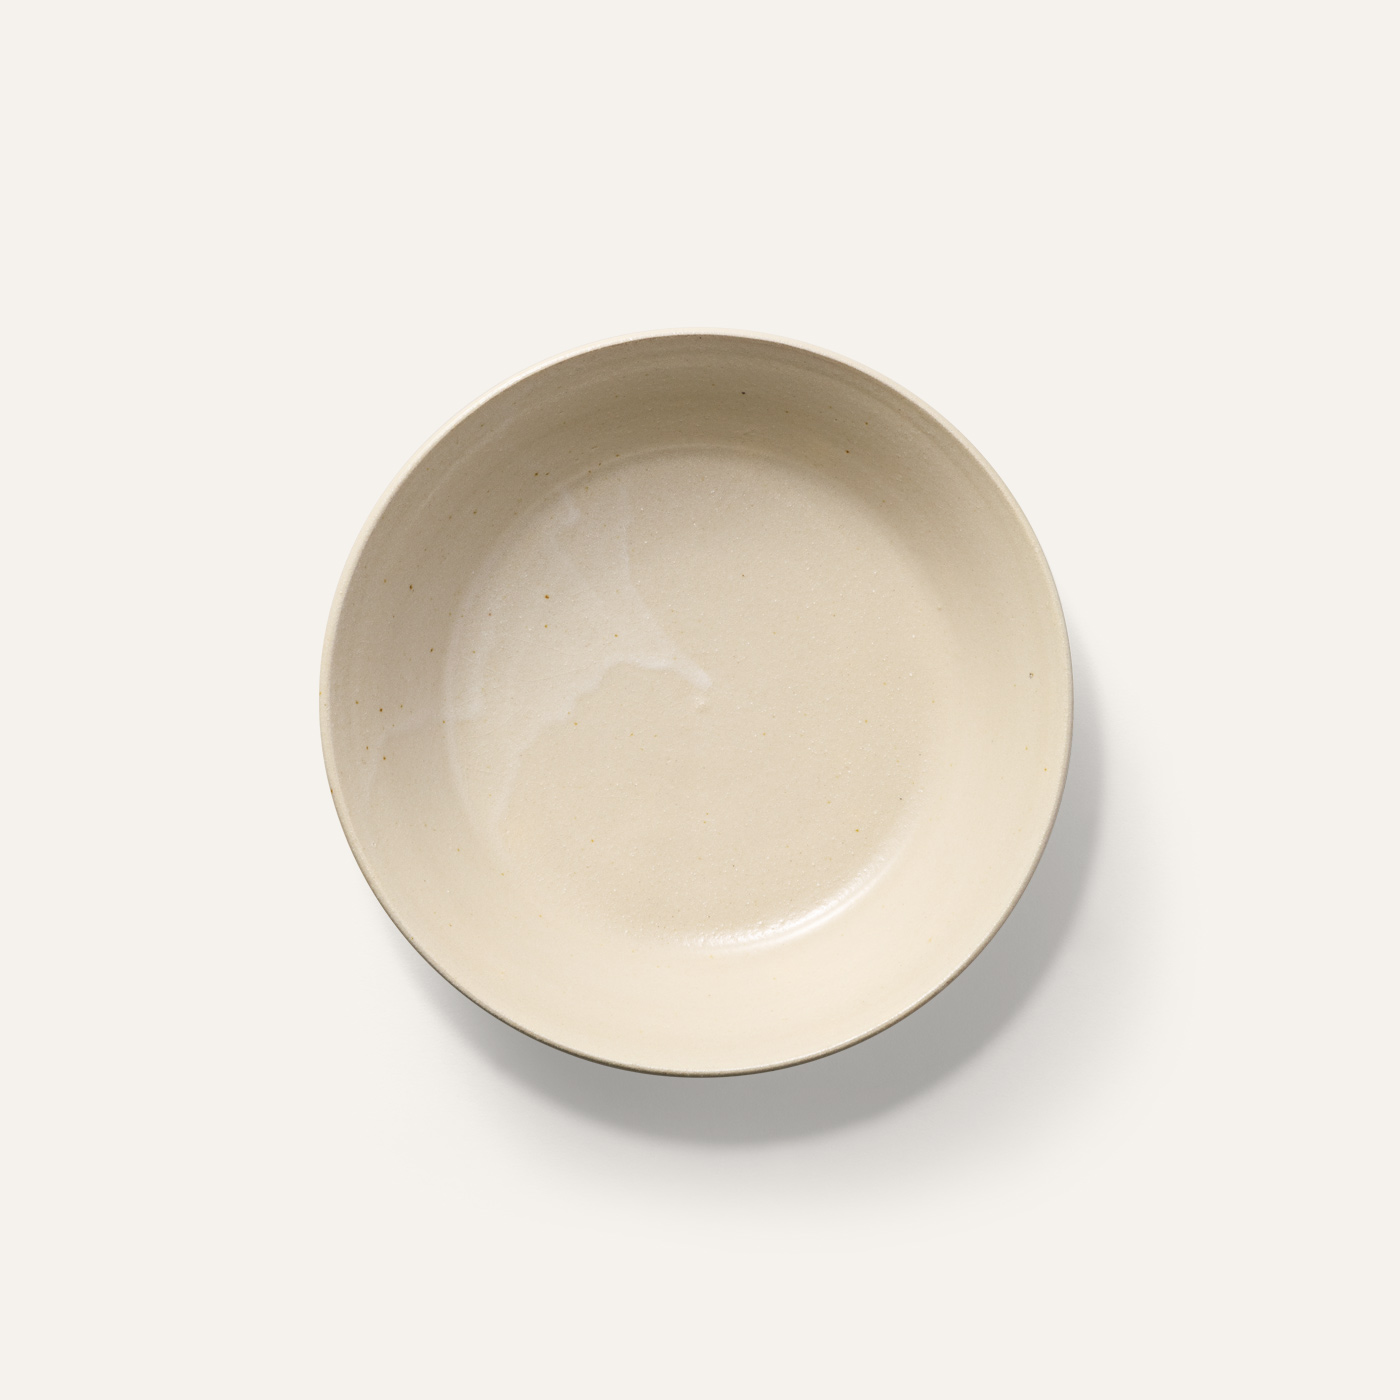 shallow bowl white